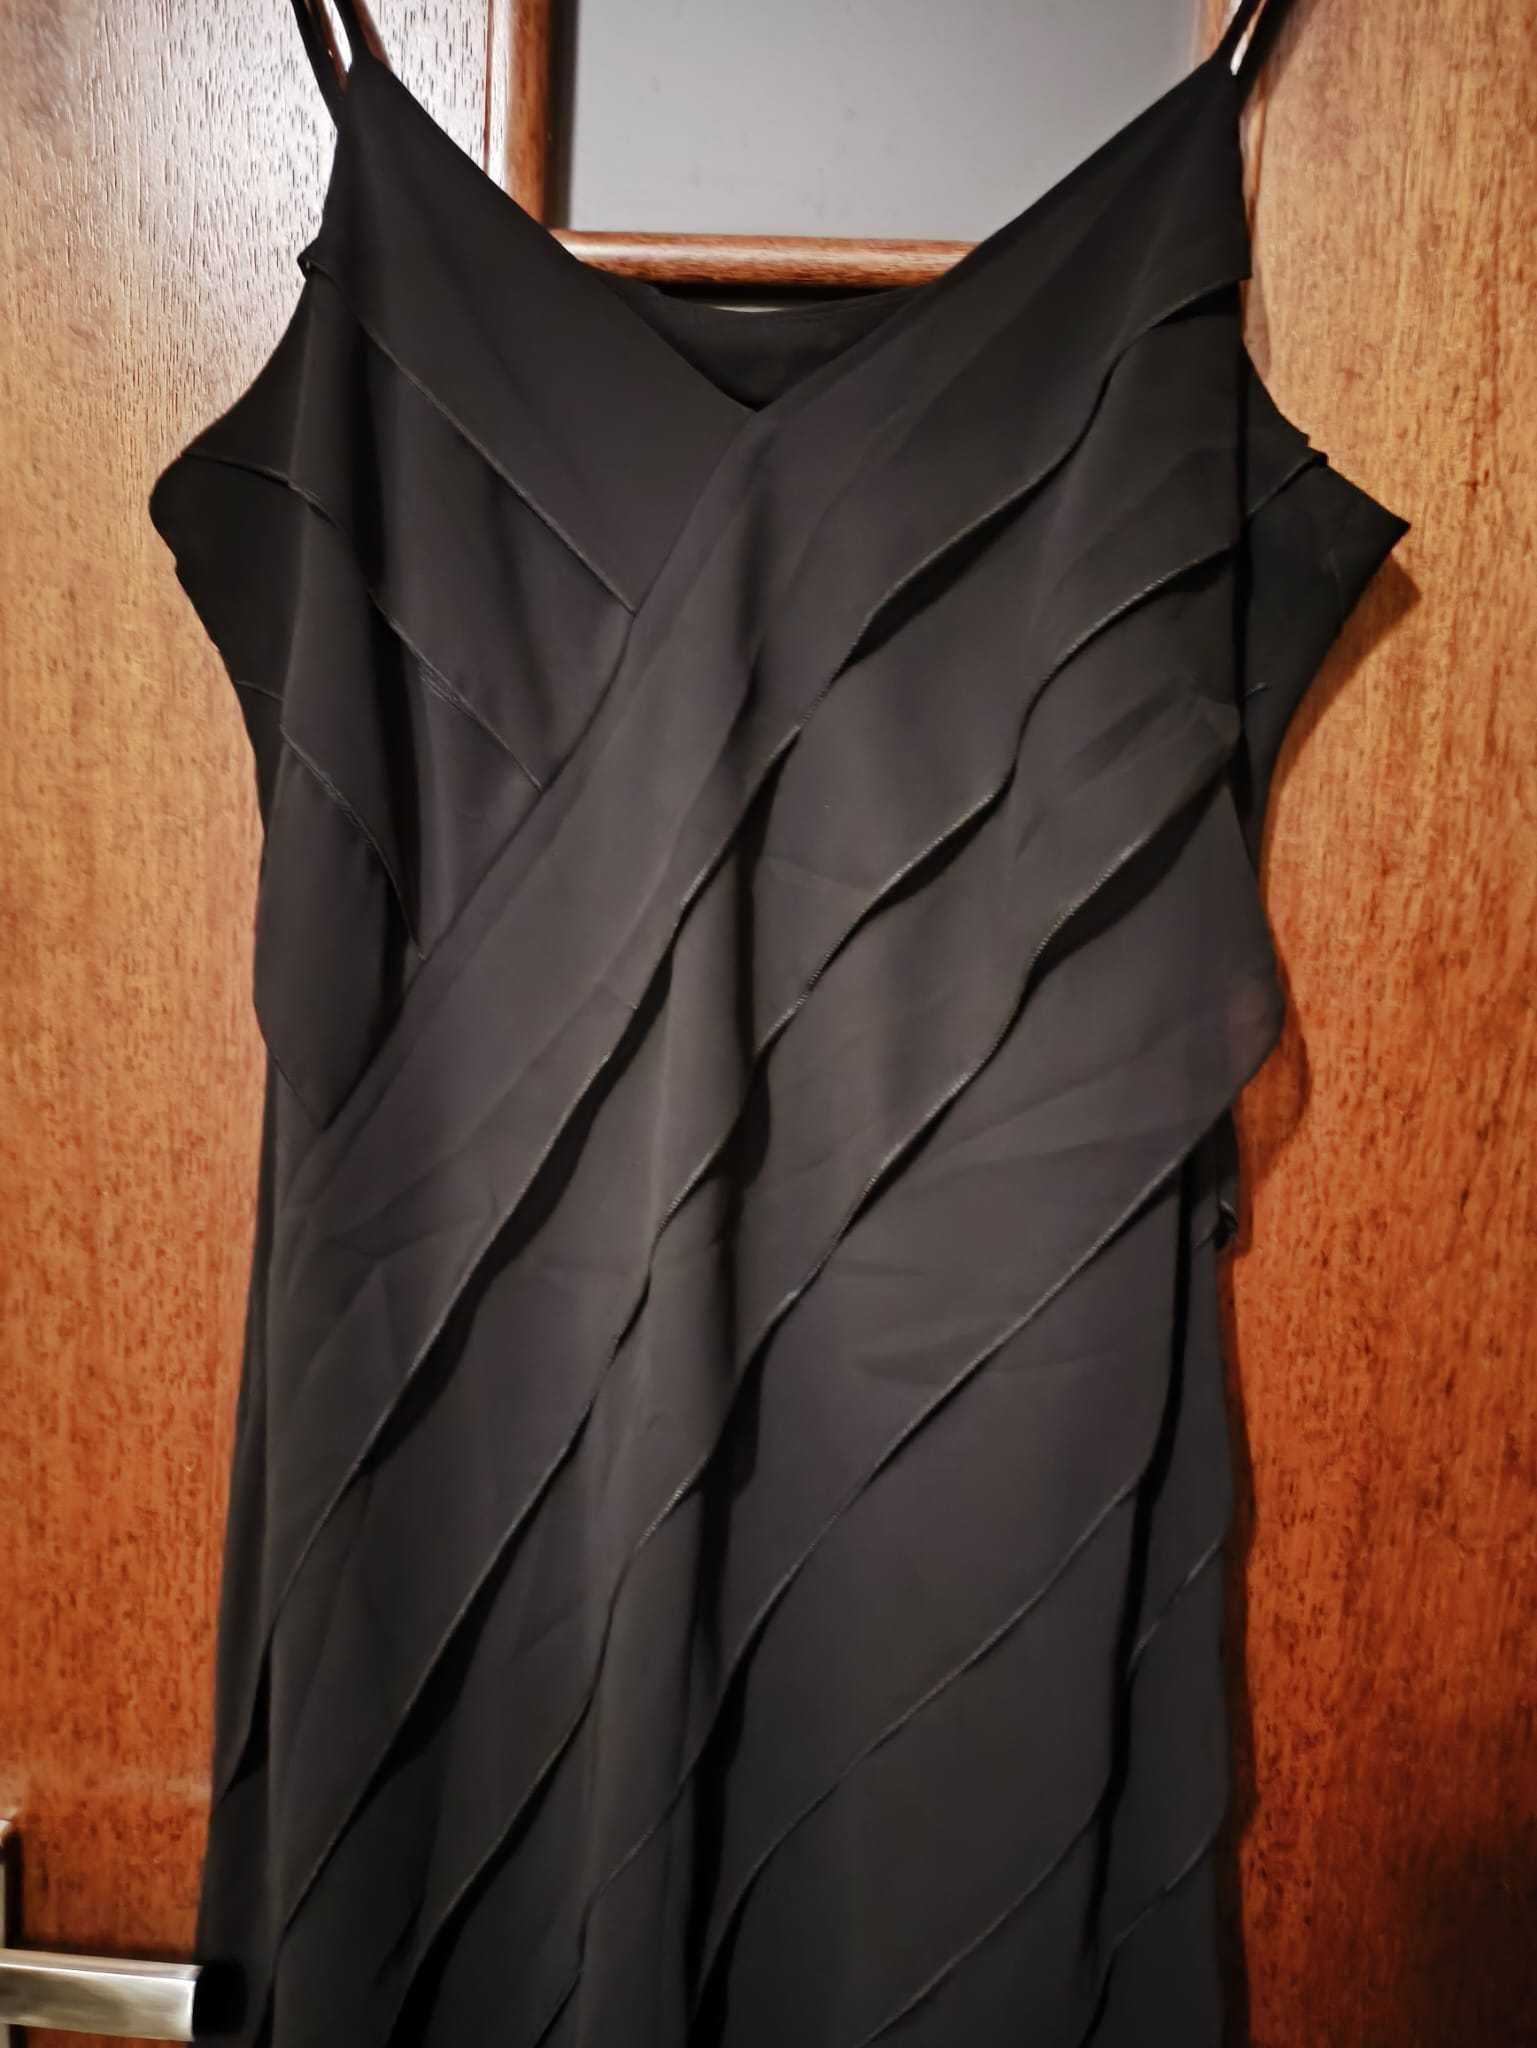 Czarna sukienka na ramiączkach